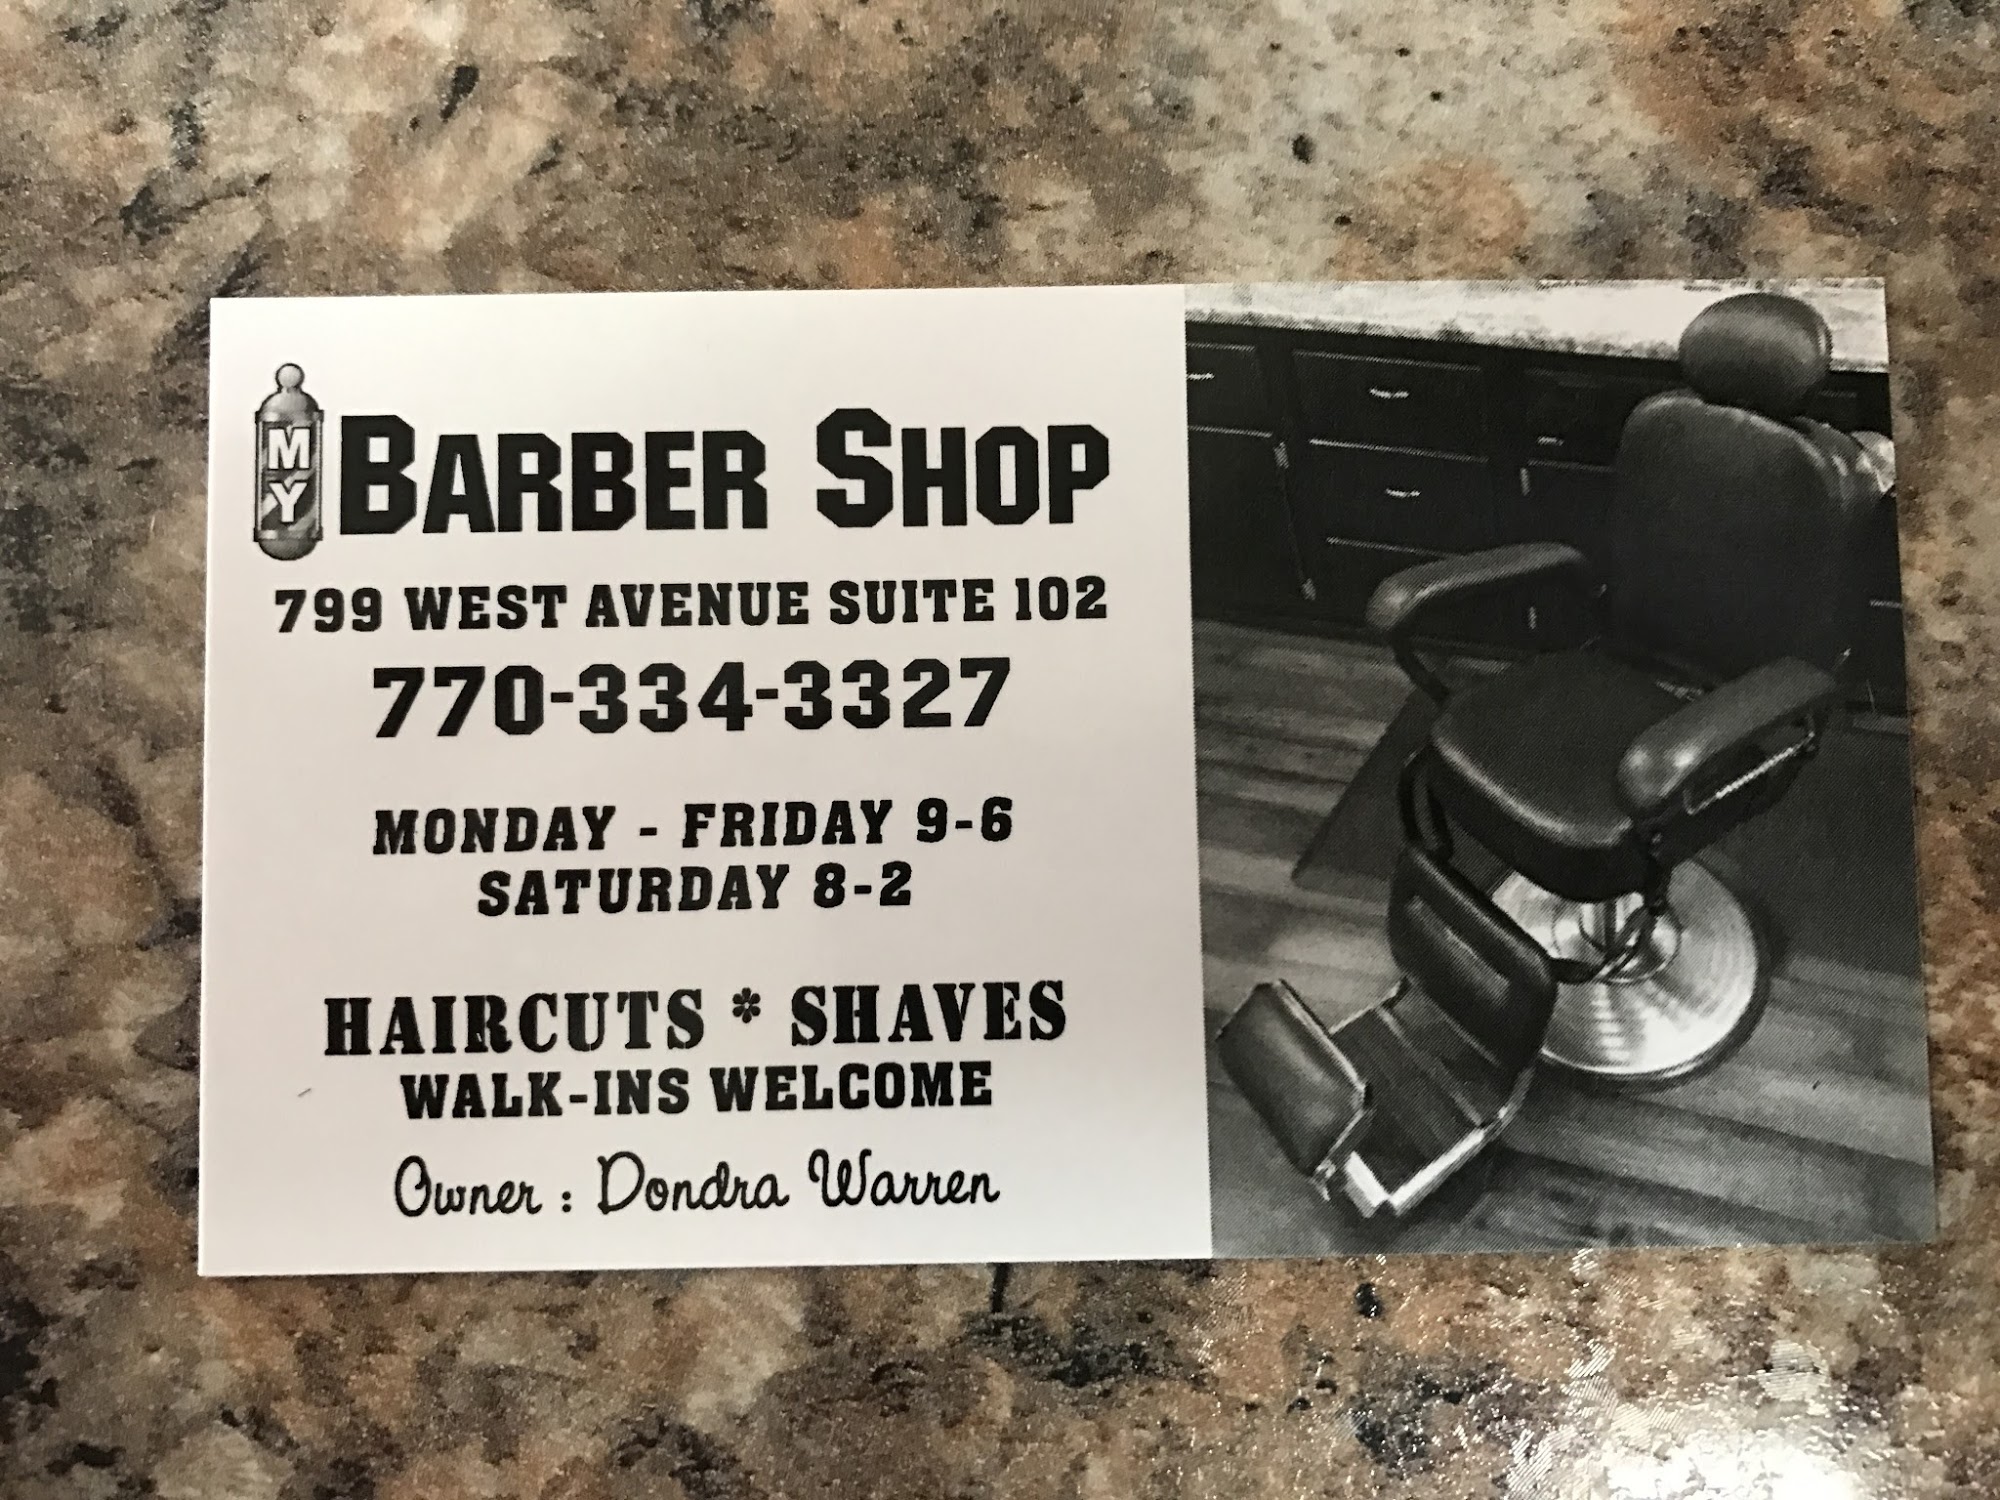 My Barbershop